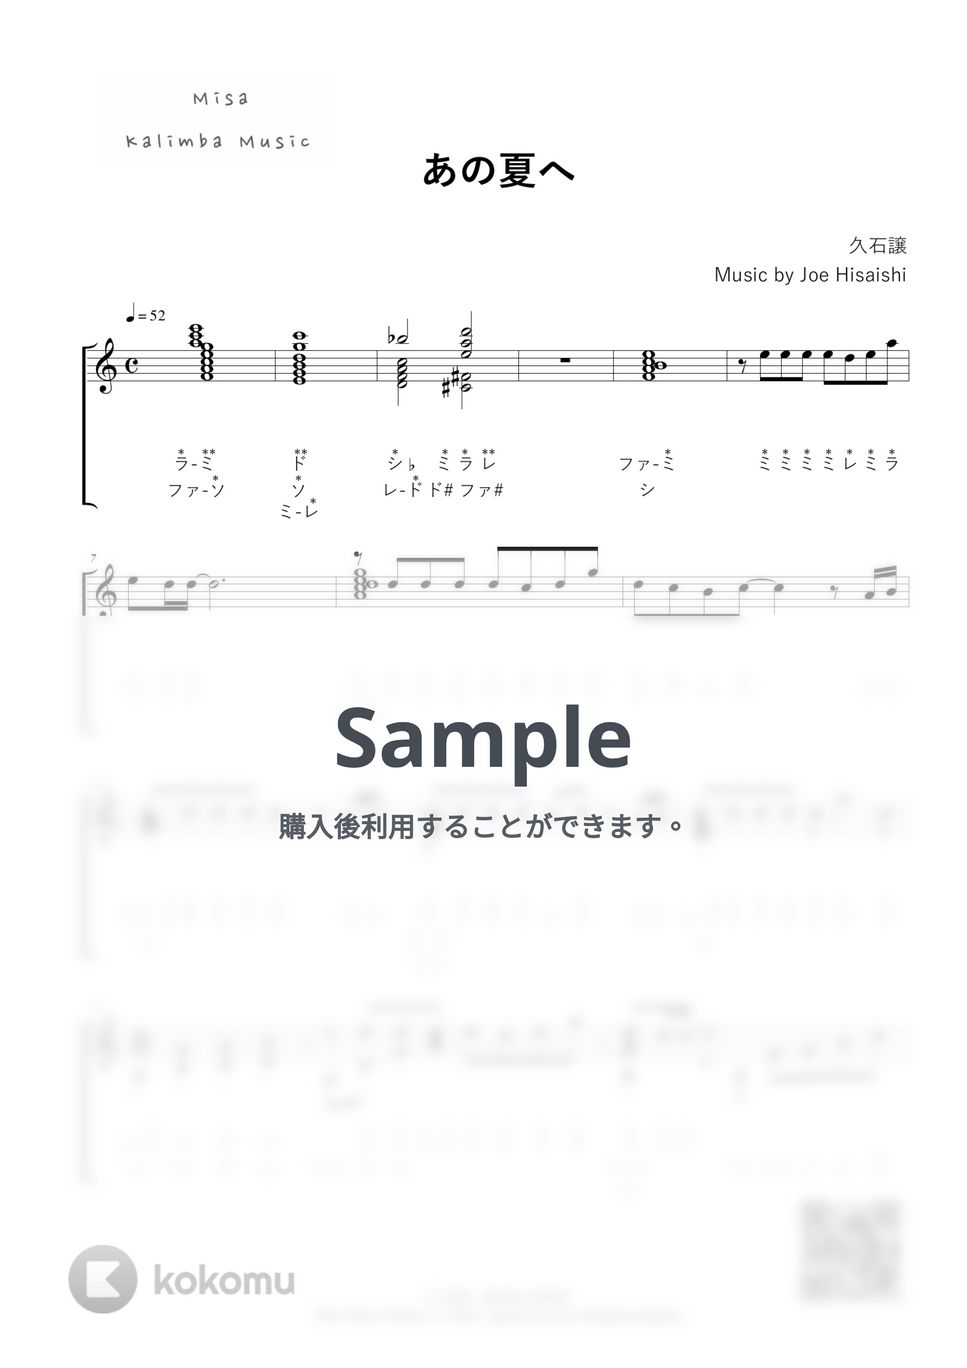 久石譲 - あの夏へ / 34音カリンバ / ドレミ表記 (模範演奏付き) by Misa / Kalimba Music